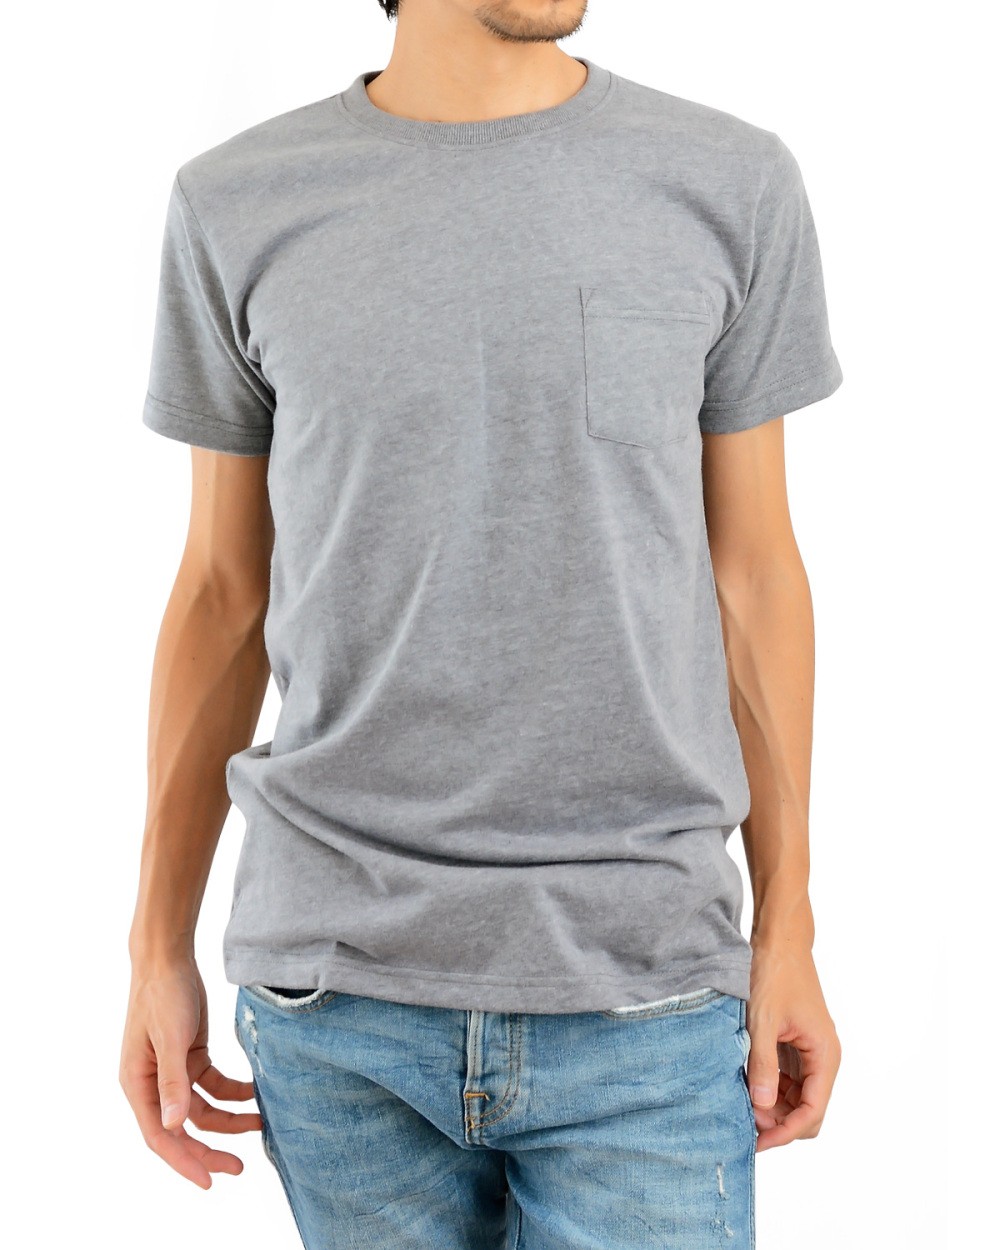 ポケット Tシャツ メンズ ティーシャツ 半袖 無地 厚手 クルーネック 